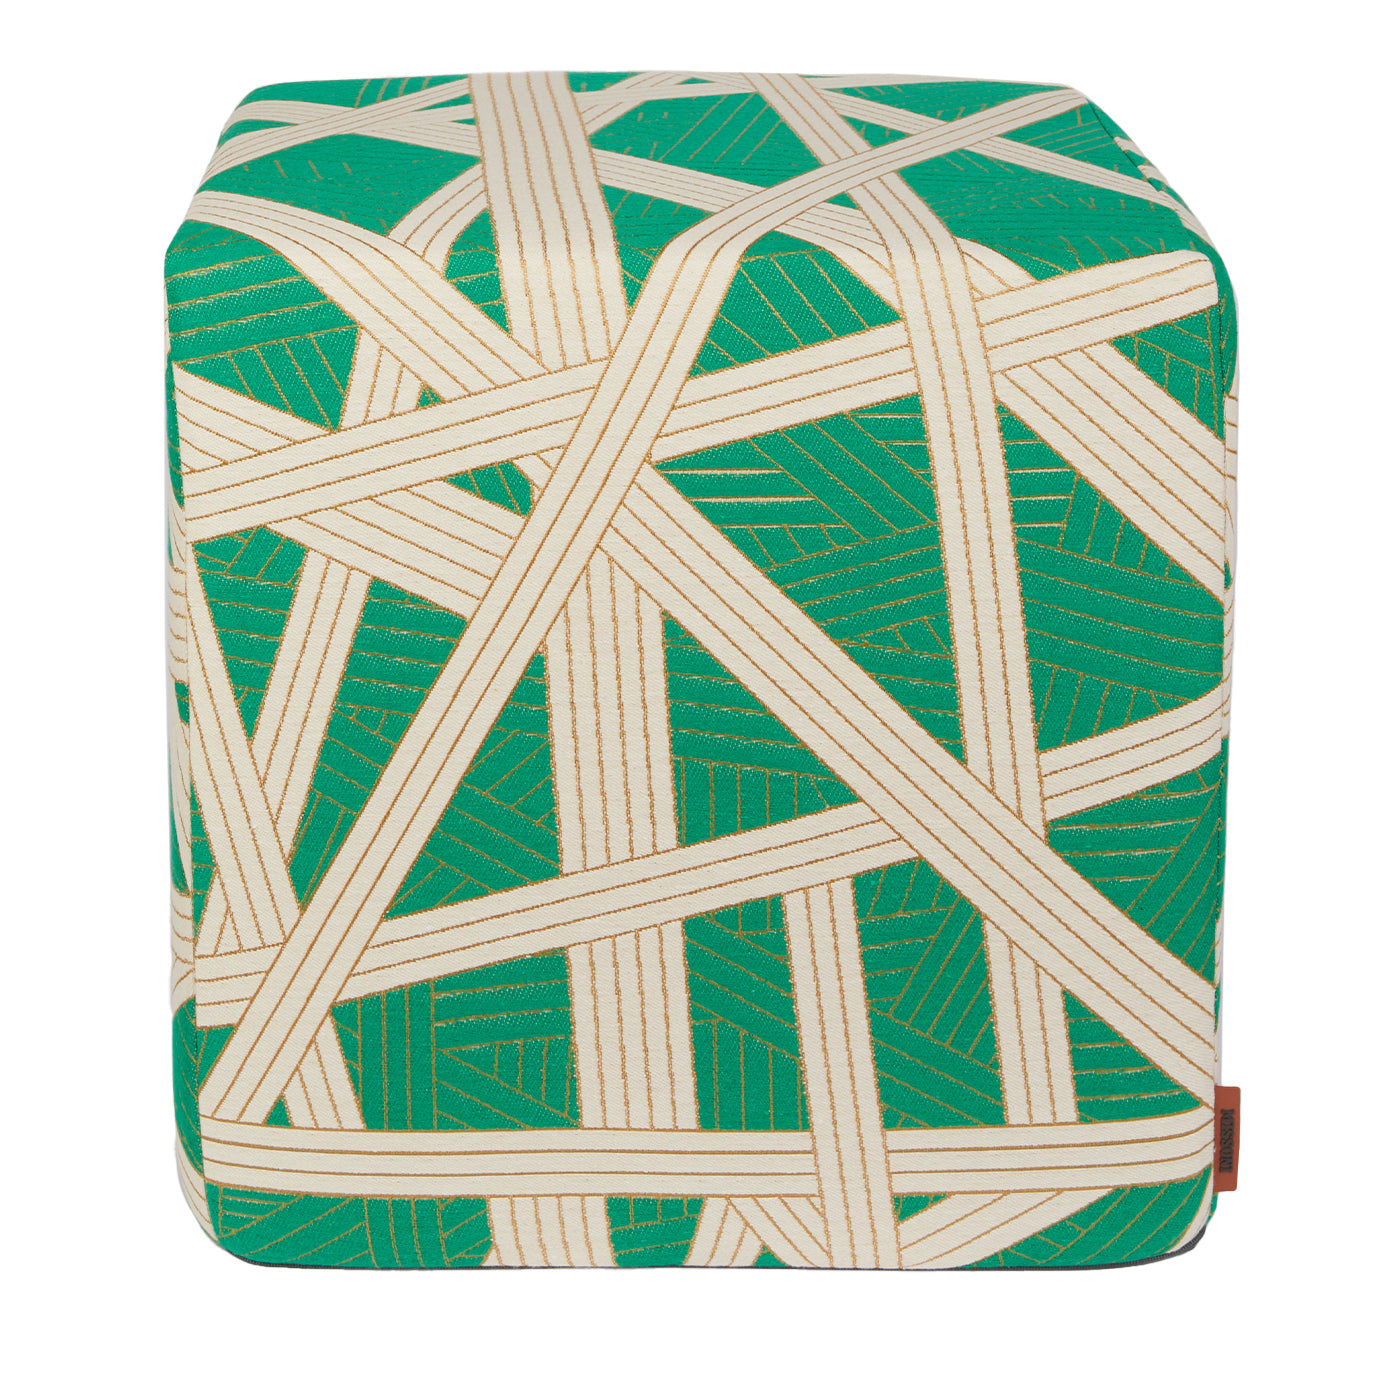 Nastri Cubic Gold und grünes Stitching Pouf - Hauptansicht